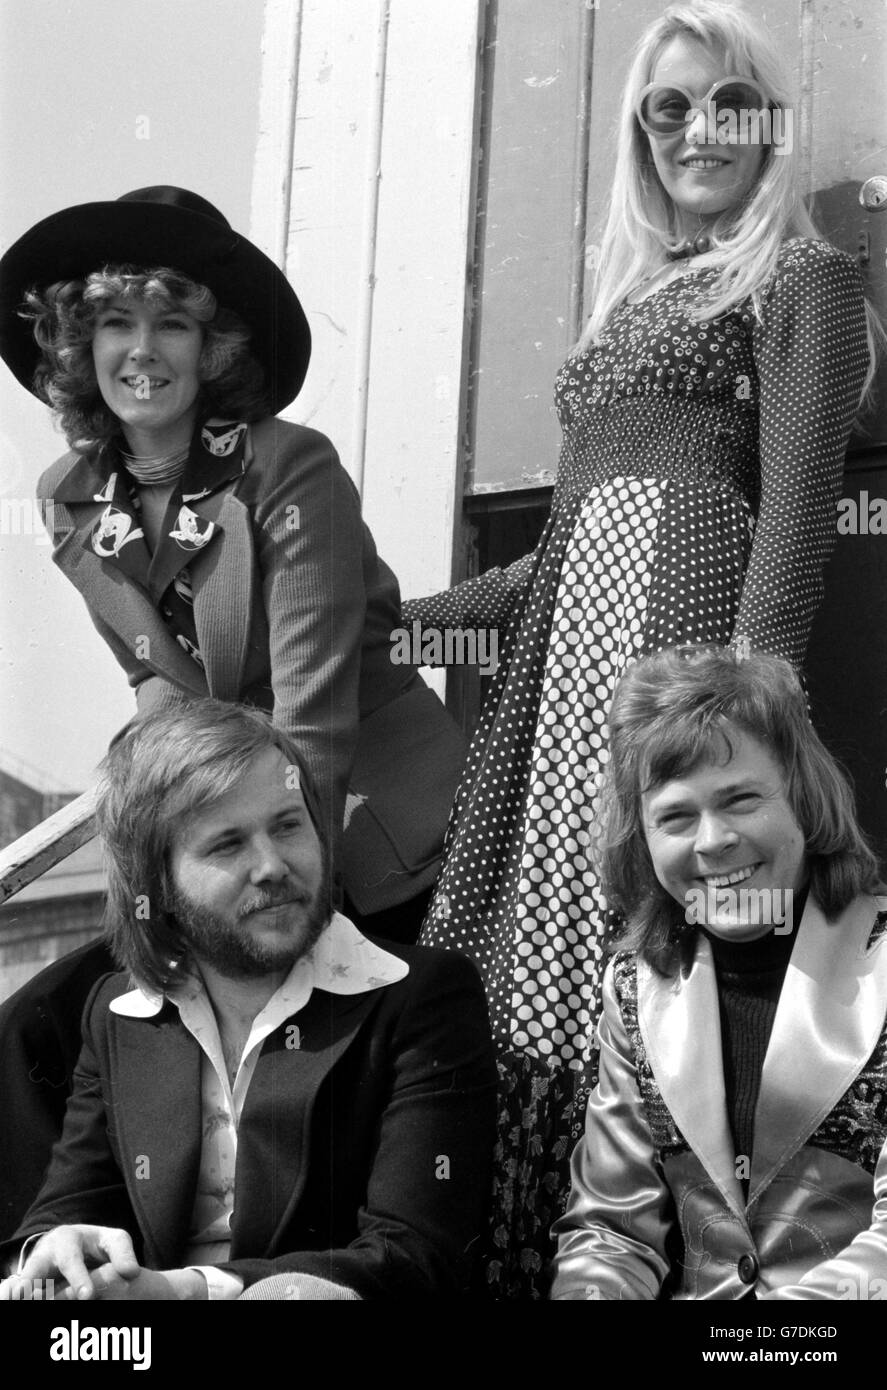 Le groupe pop Abba à Brighton, où ils ont remporté le concours Eurovision de la chanson pour la Suède avec 'Waterloo', chanté par les filles, Annifrid Lyngstad (Frida), à gauche, et Agnetha Faltskog (Anna).Les autres membres du groupe, Benny Andersson, à gauche, et Bjorn Ulvaeus, ont composé la chanson. Banque D'Images